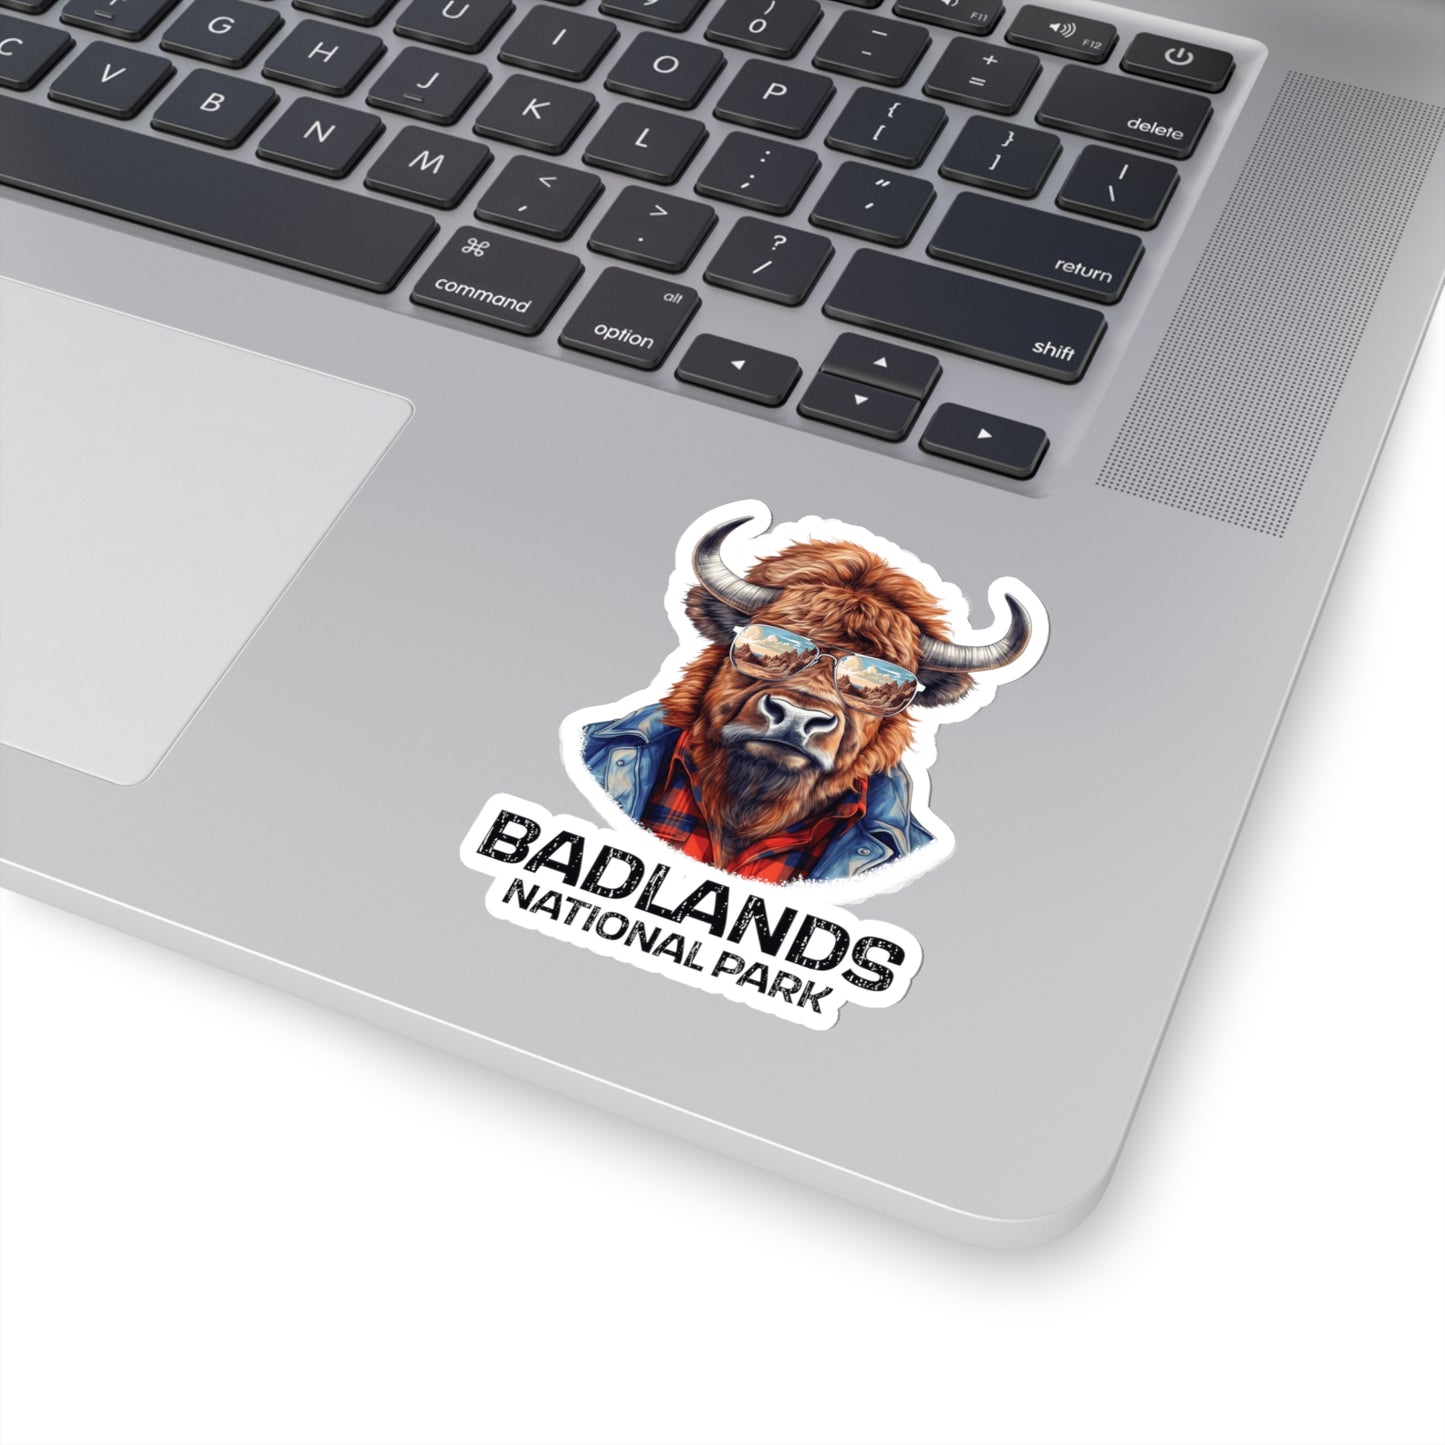 Badlands National Park Sticker - Bison